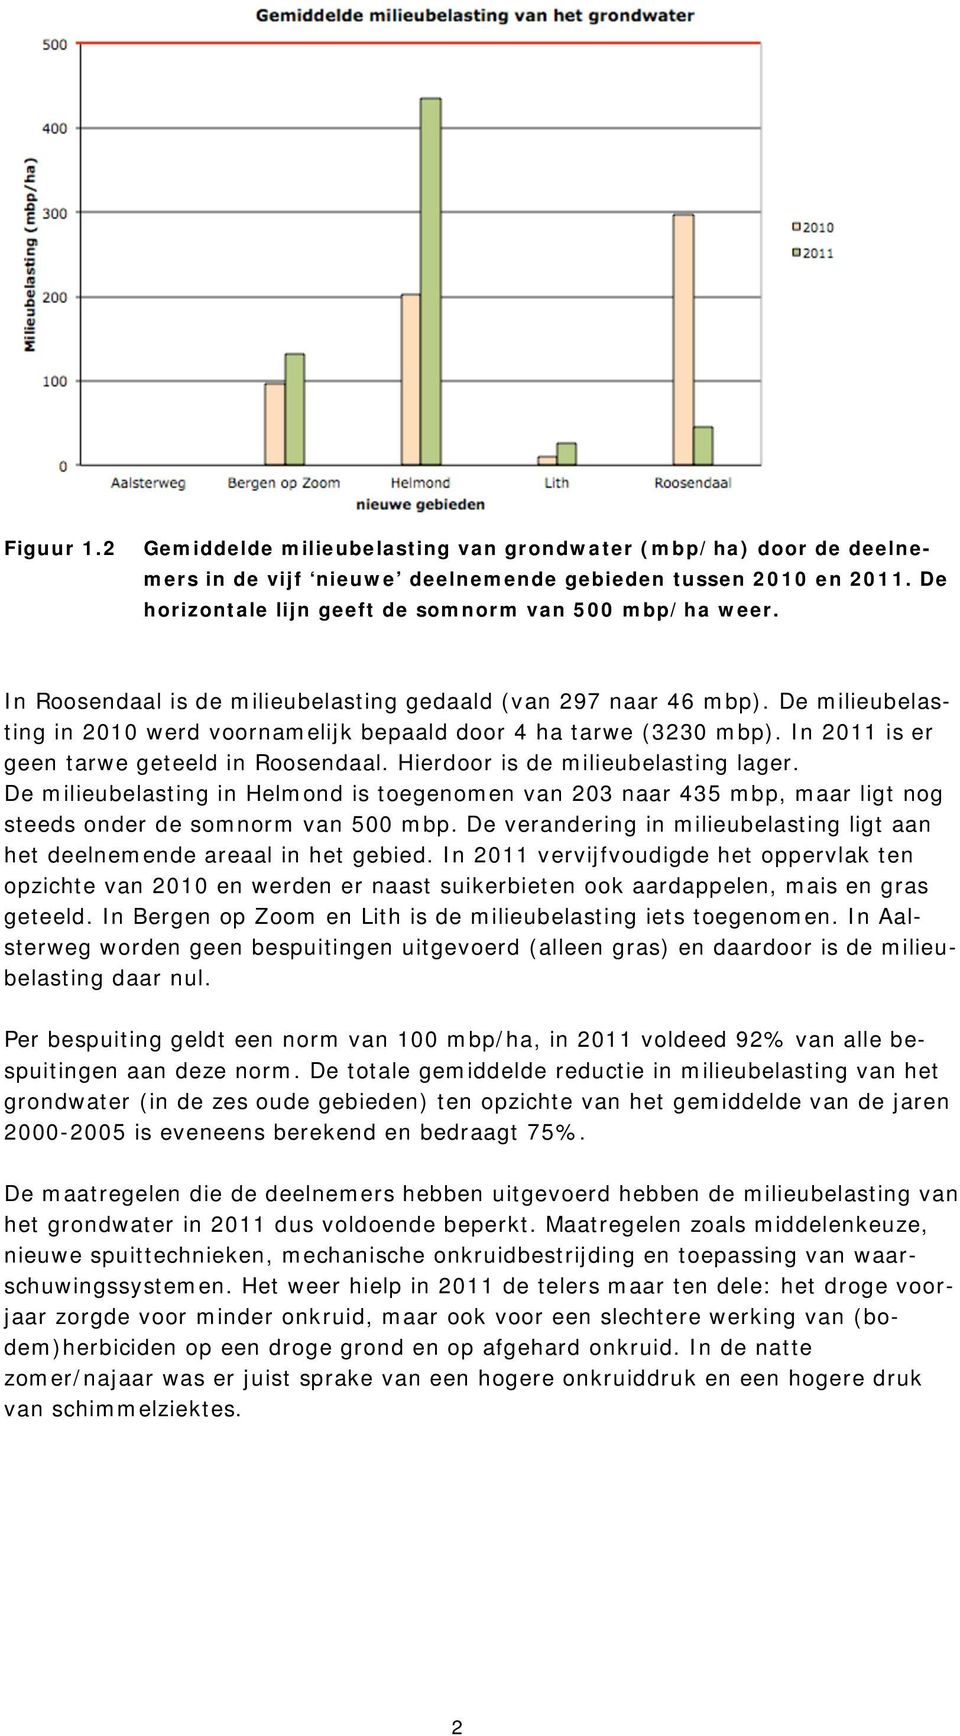 Hierdoor is de milieubelasting lager. De milieubelasting in Helmond is toegenomen van 203 naar 435 mbp, maar ligt nog steeds onder de somnorm van 500 mbp.